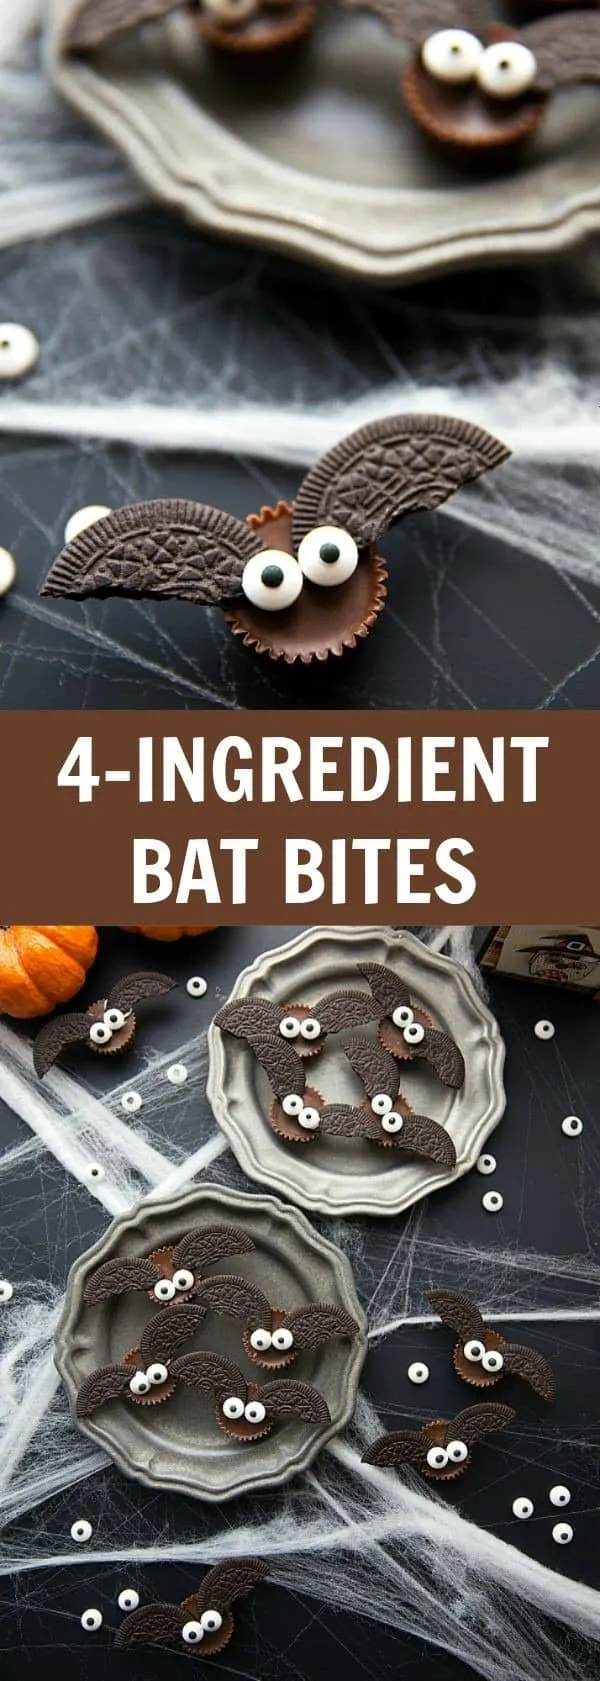 4 Ingredient Bat Bites